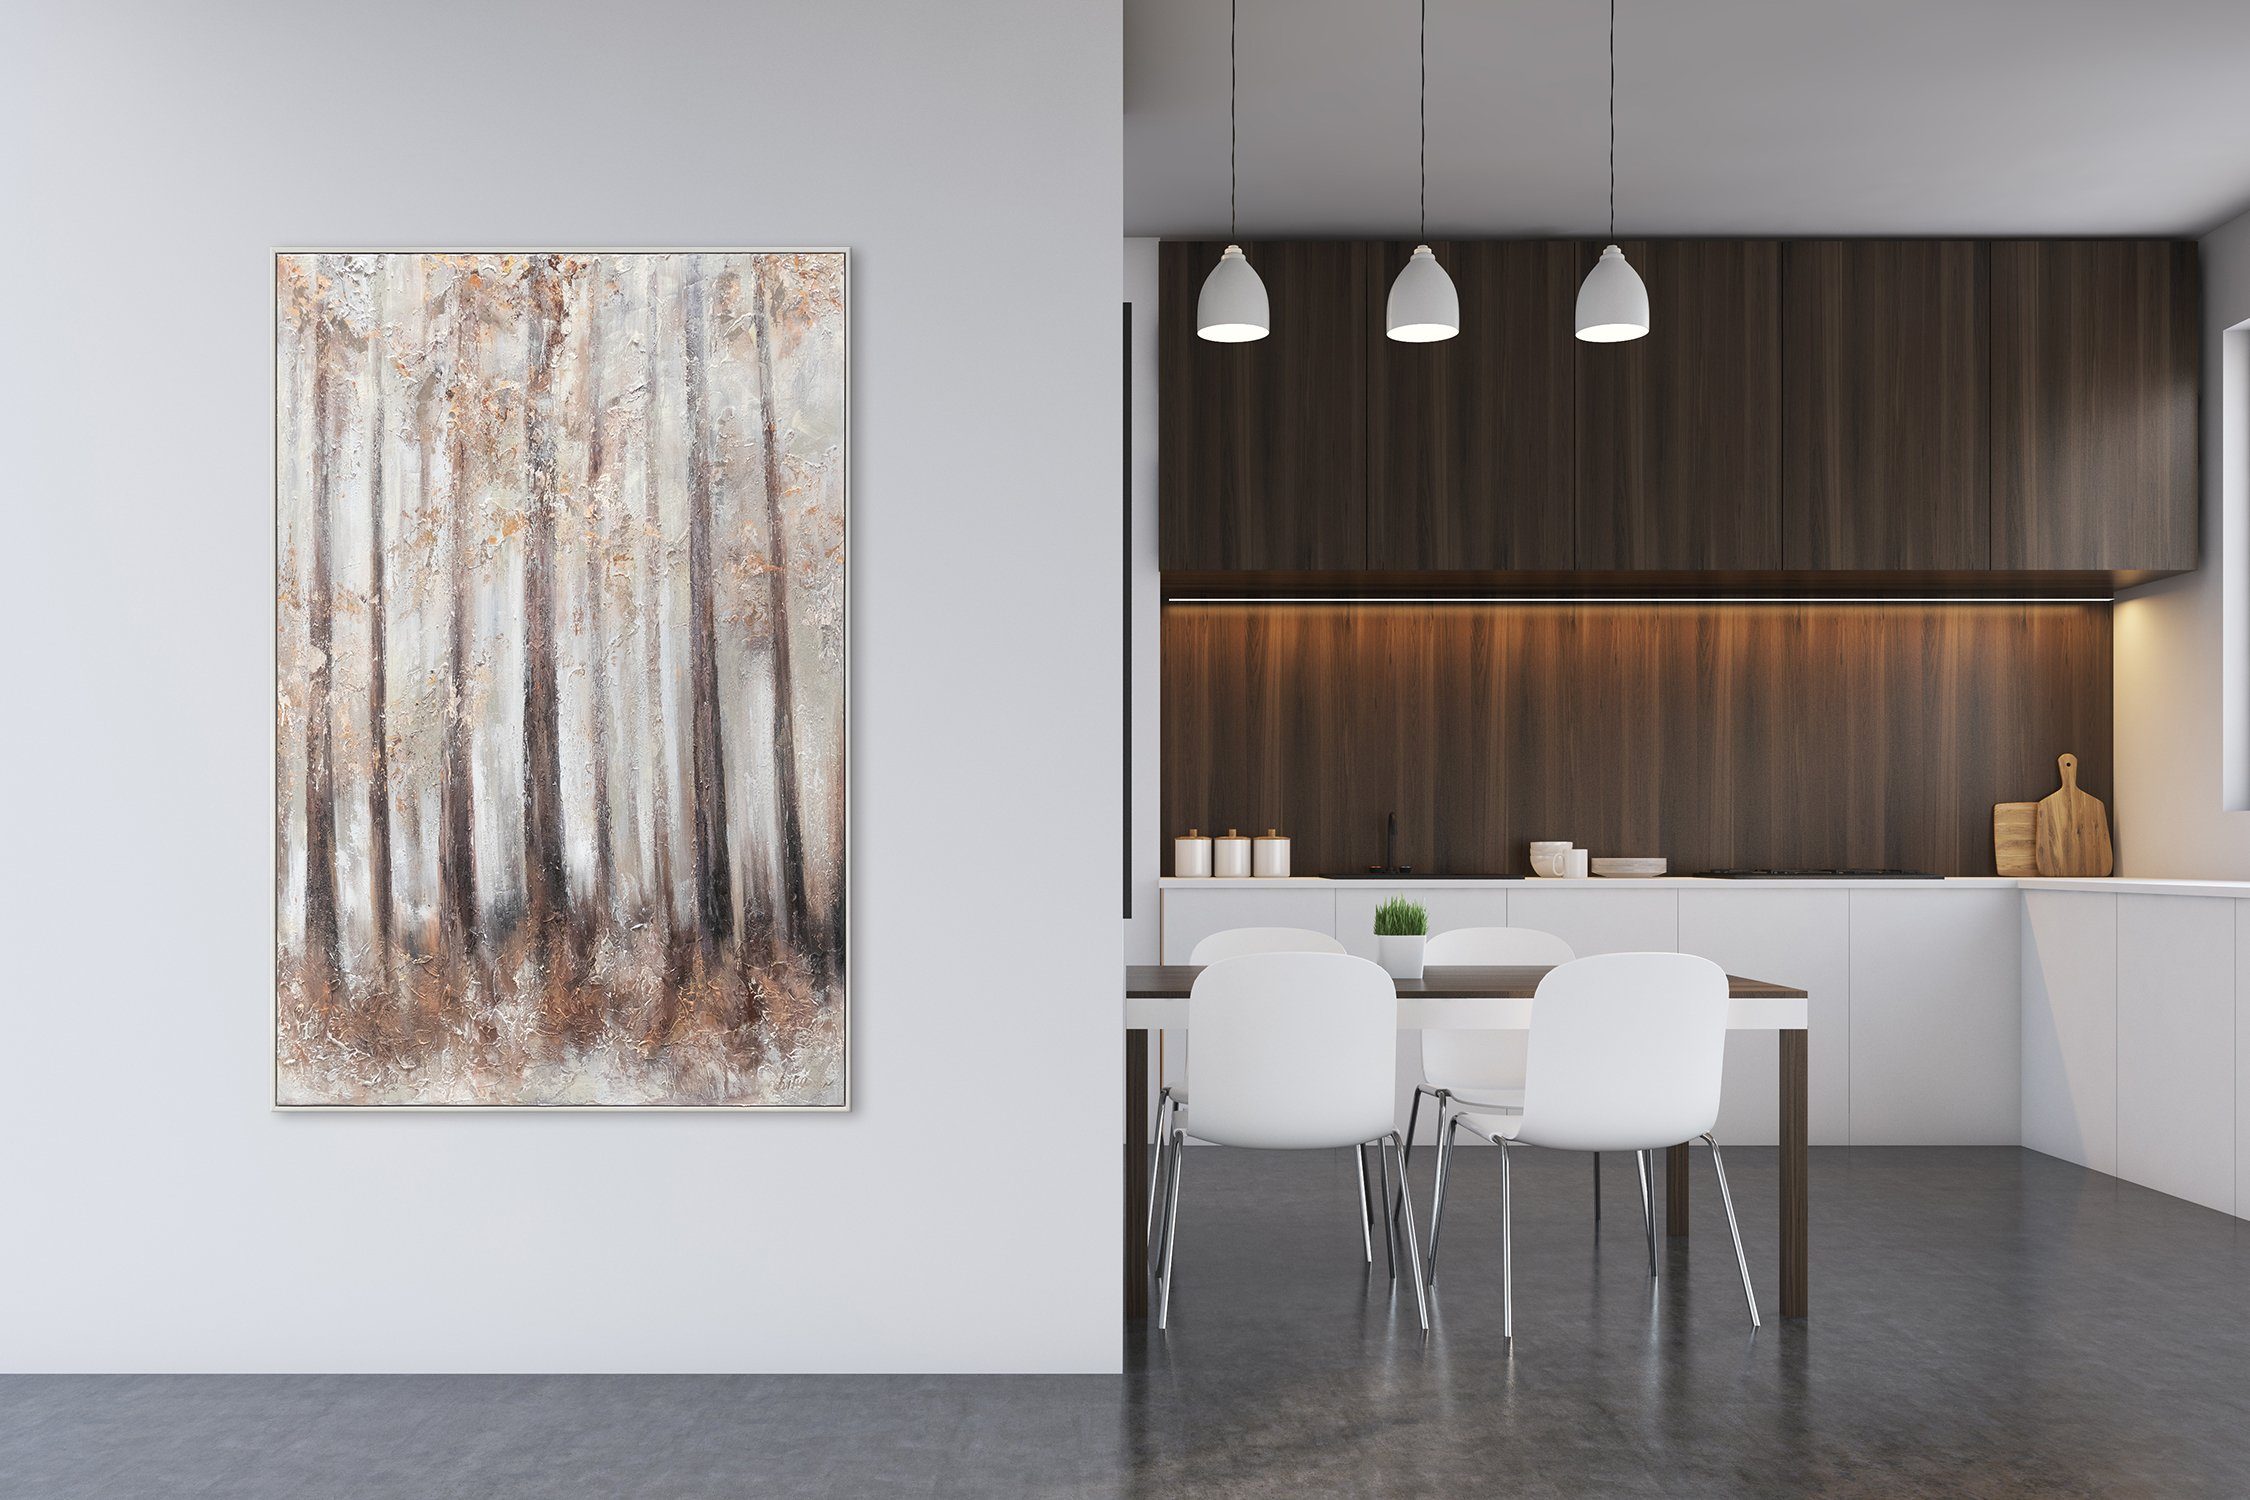 Handgemalt Wald Bild Rahmen Baum Morgenfrische, Gemälde vom mit Leinwand YS-Art Landschaft